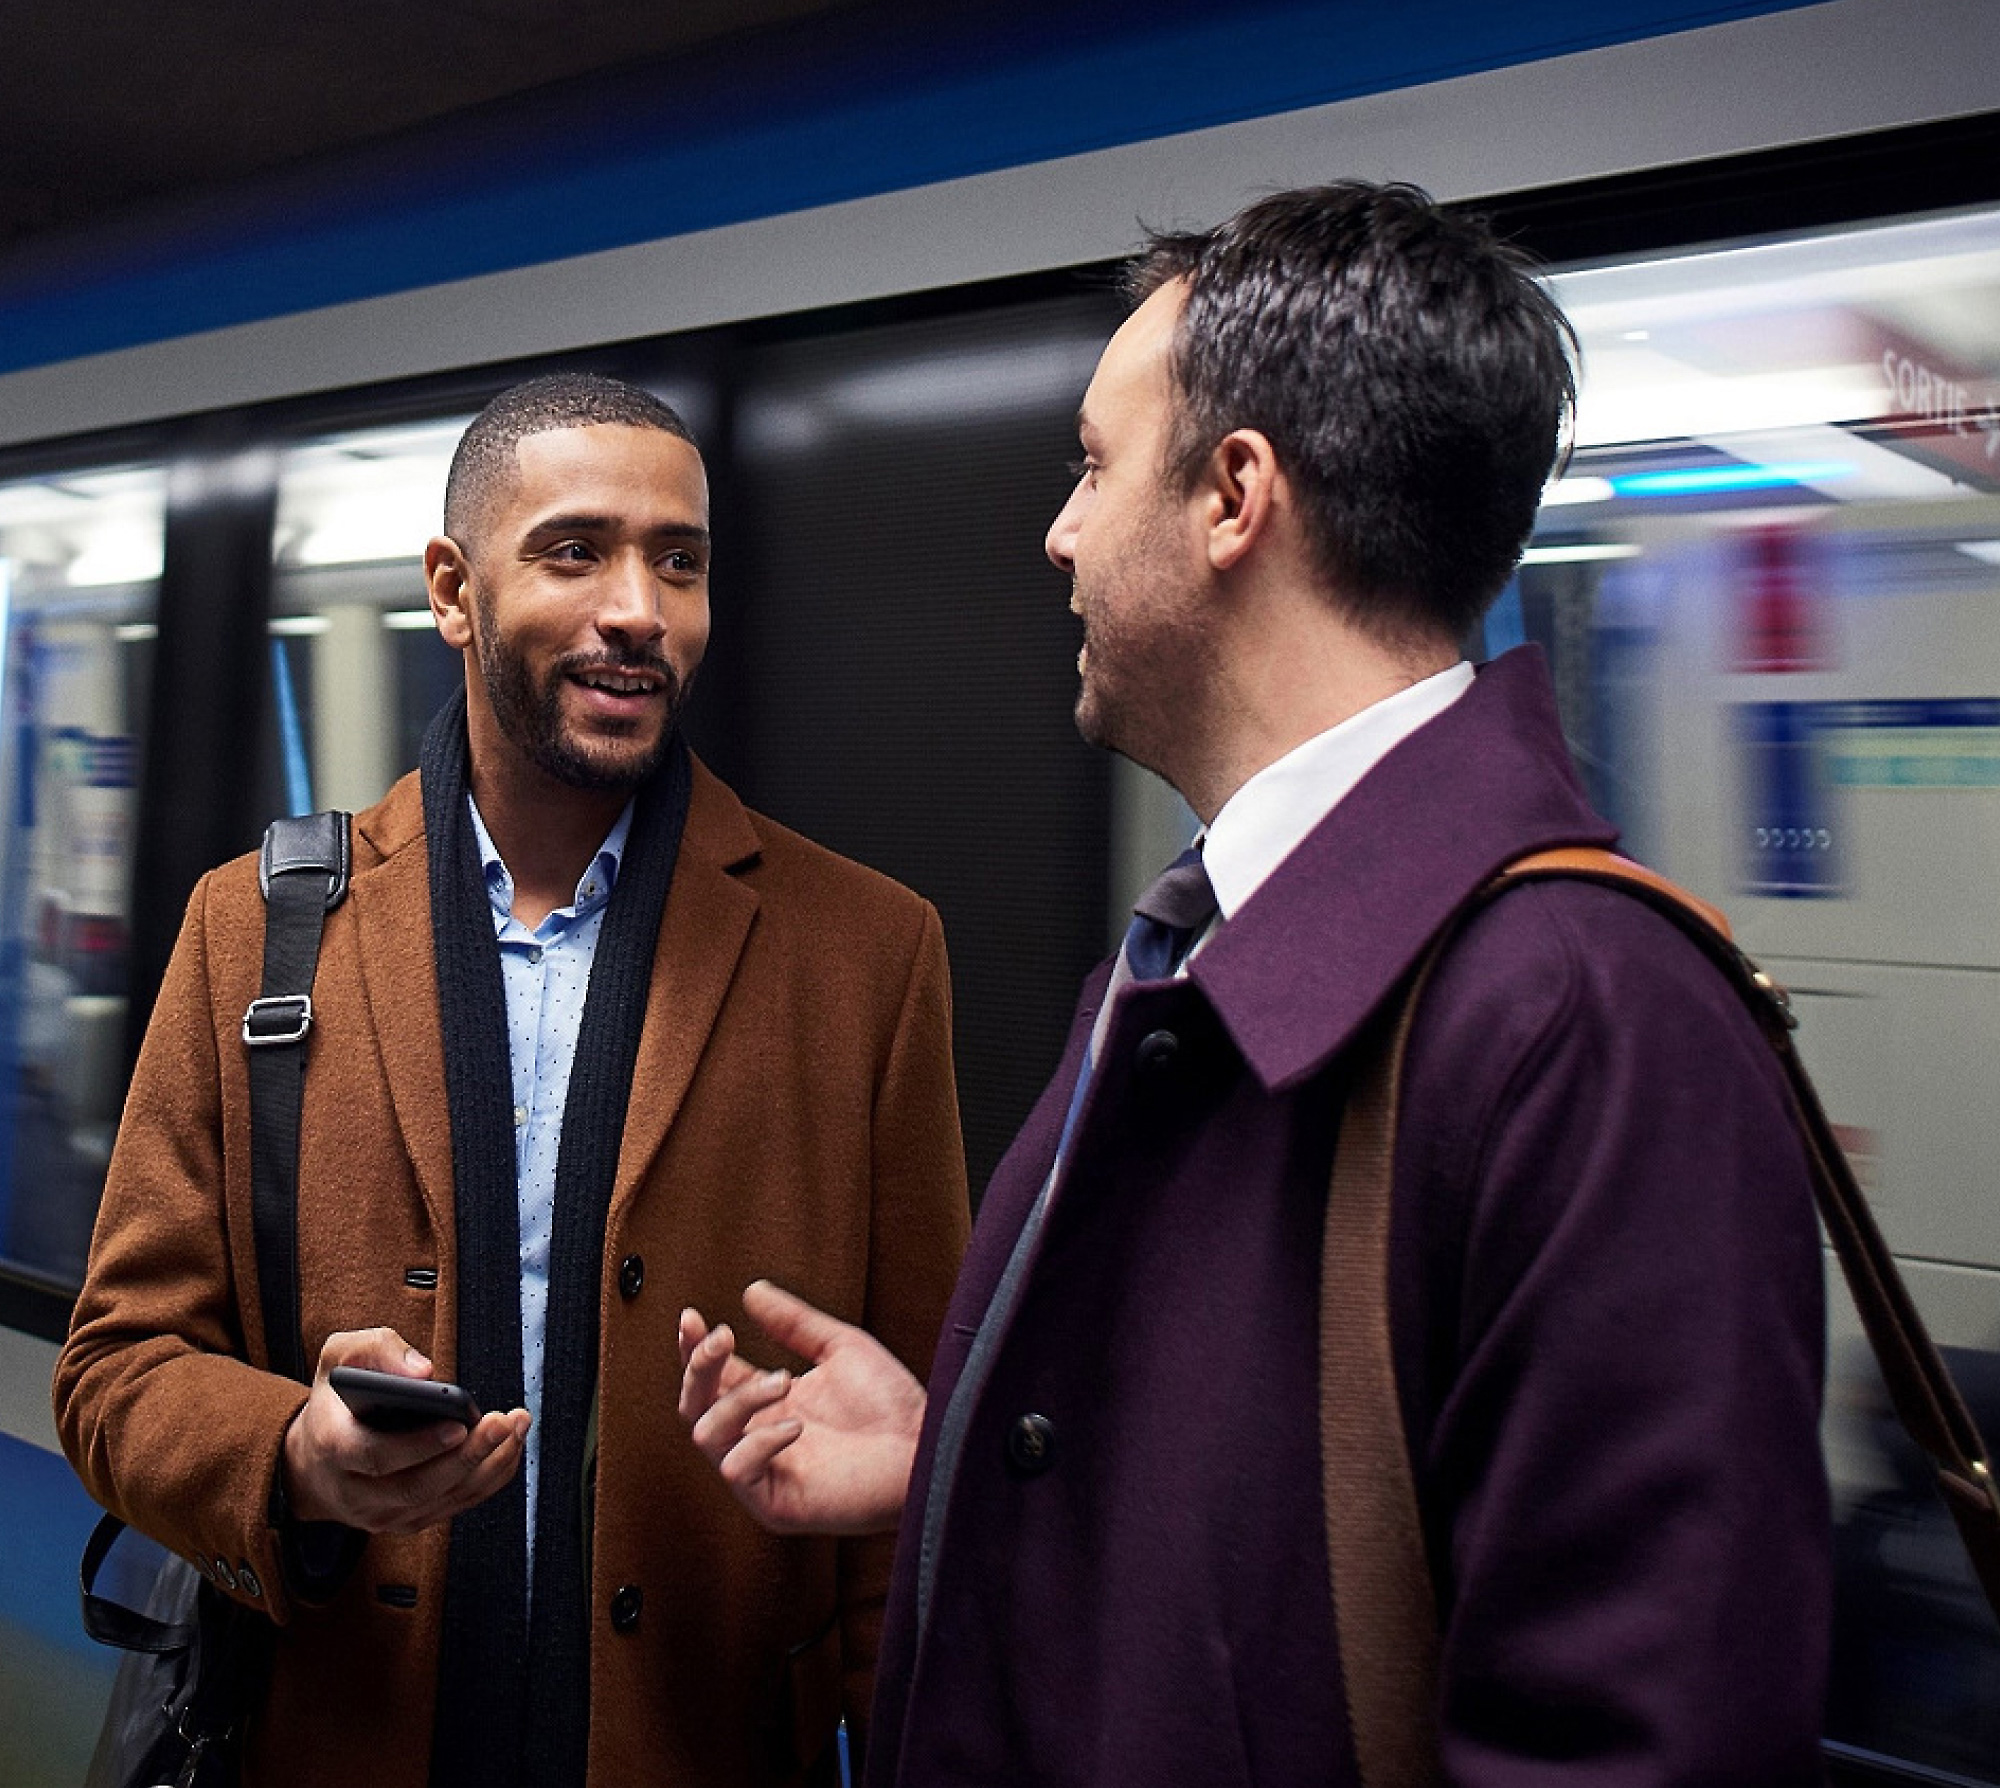 Dos hombres hablando en una plataforma de metro, con uno sosteniendo un smartphone y un tren borroso en movimiento detrás de ellos.